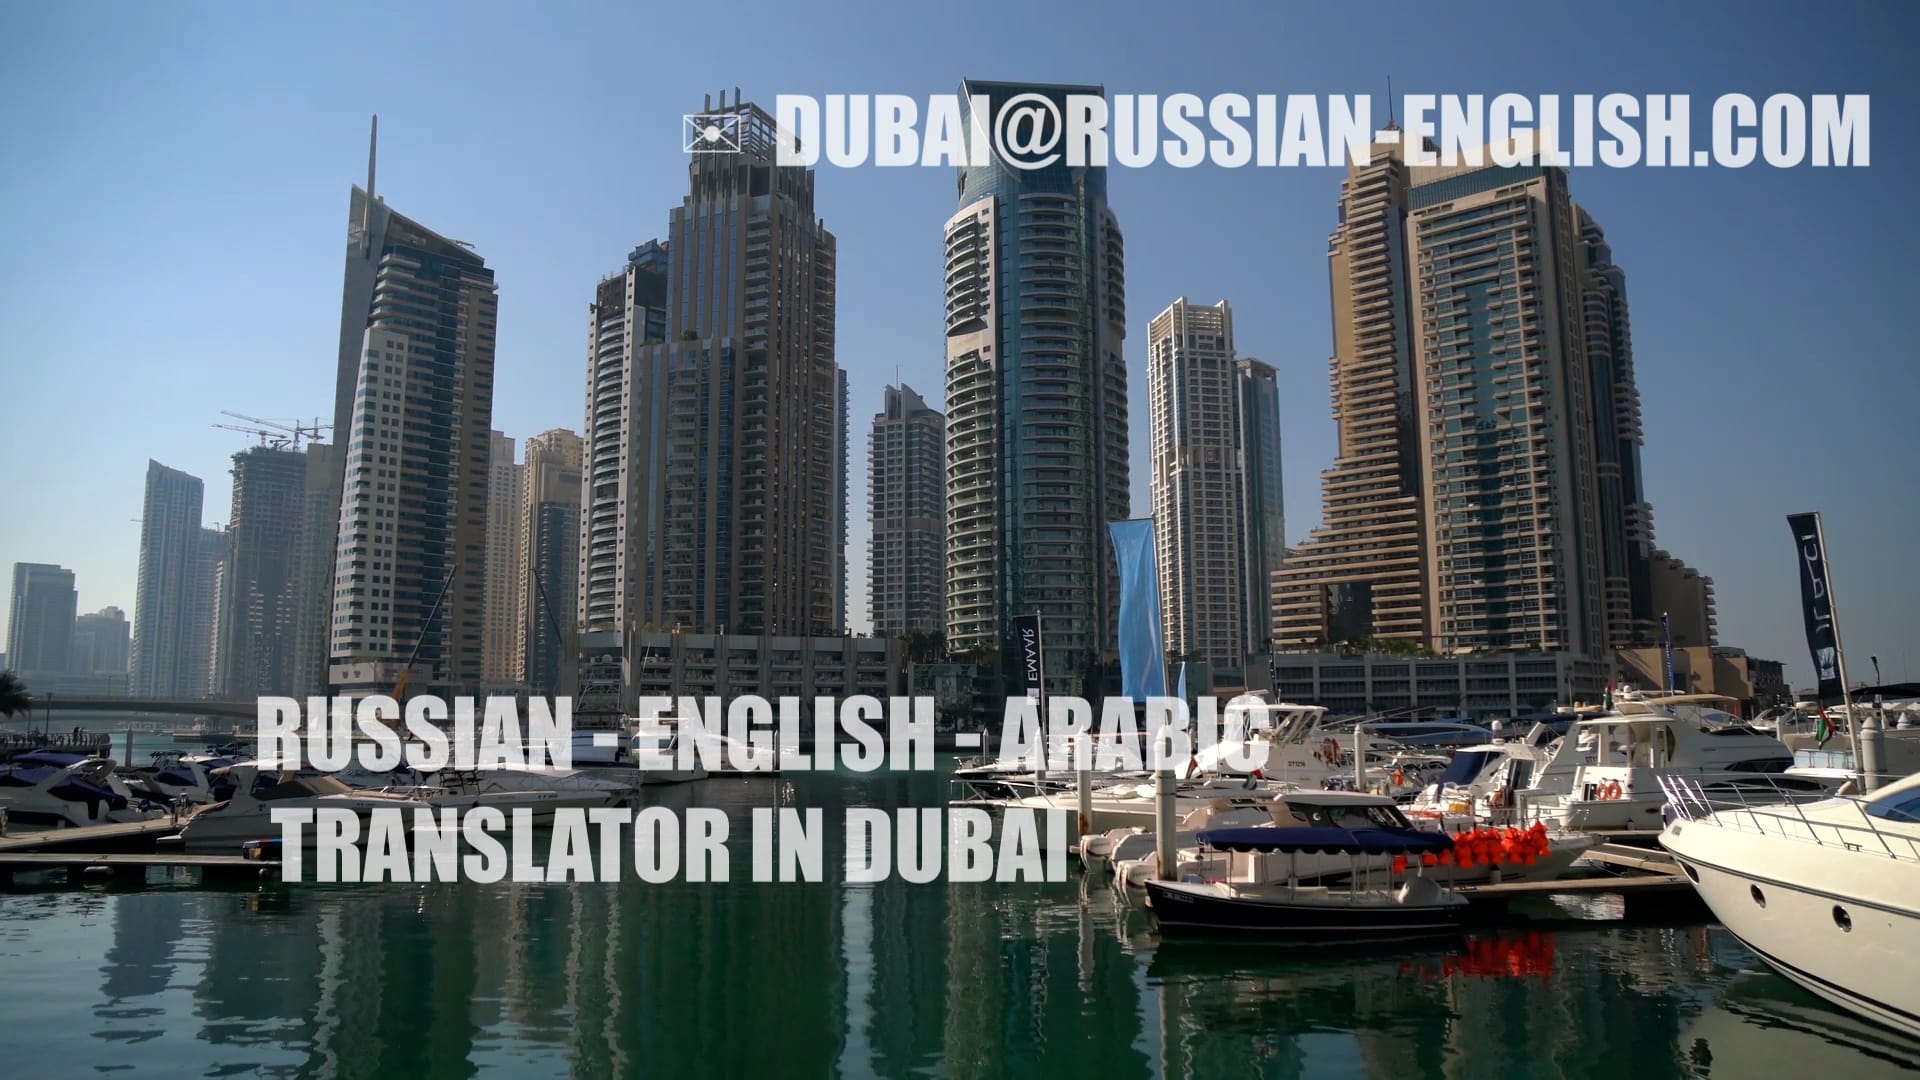 Переводчик с арабского или английского на русский или наоборот для любой предстоящей конференции в районе Дубая в 2022-2023 году.